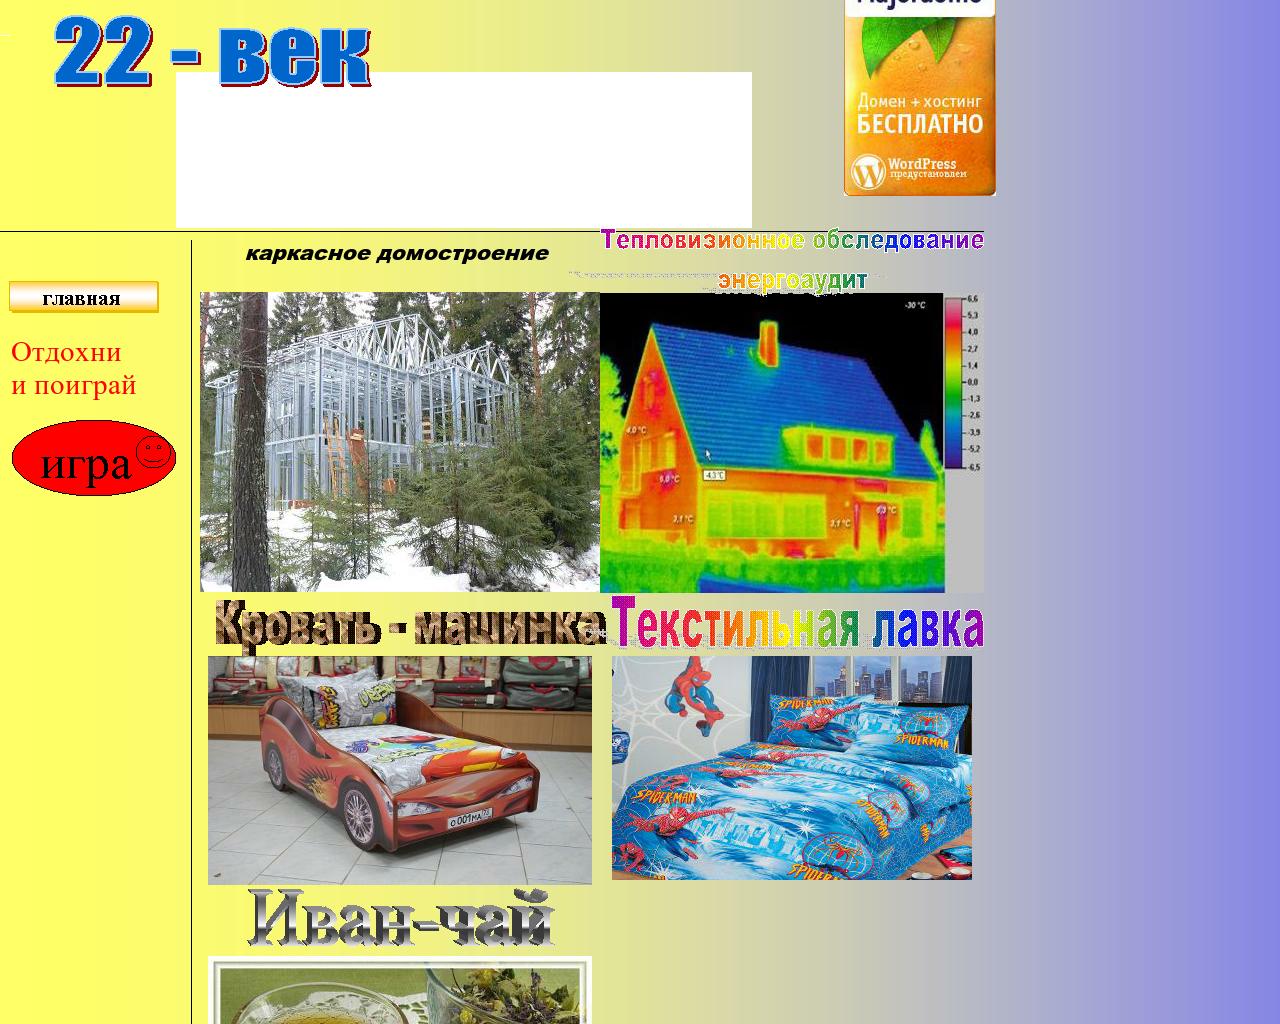 Изображение сайта 22-wek.ru в разрешении 1280x1024